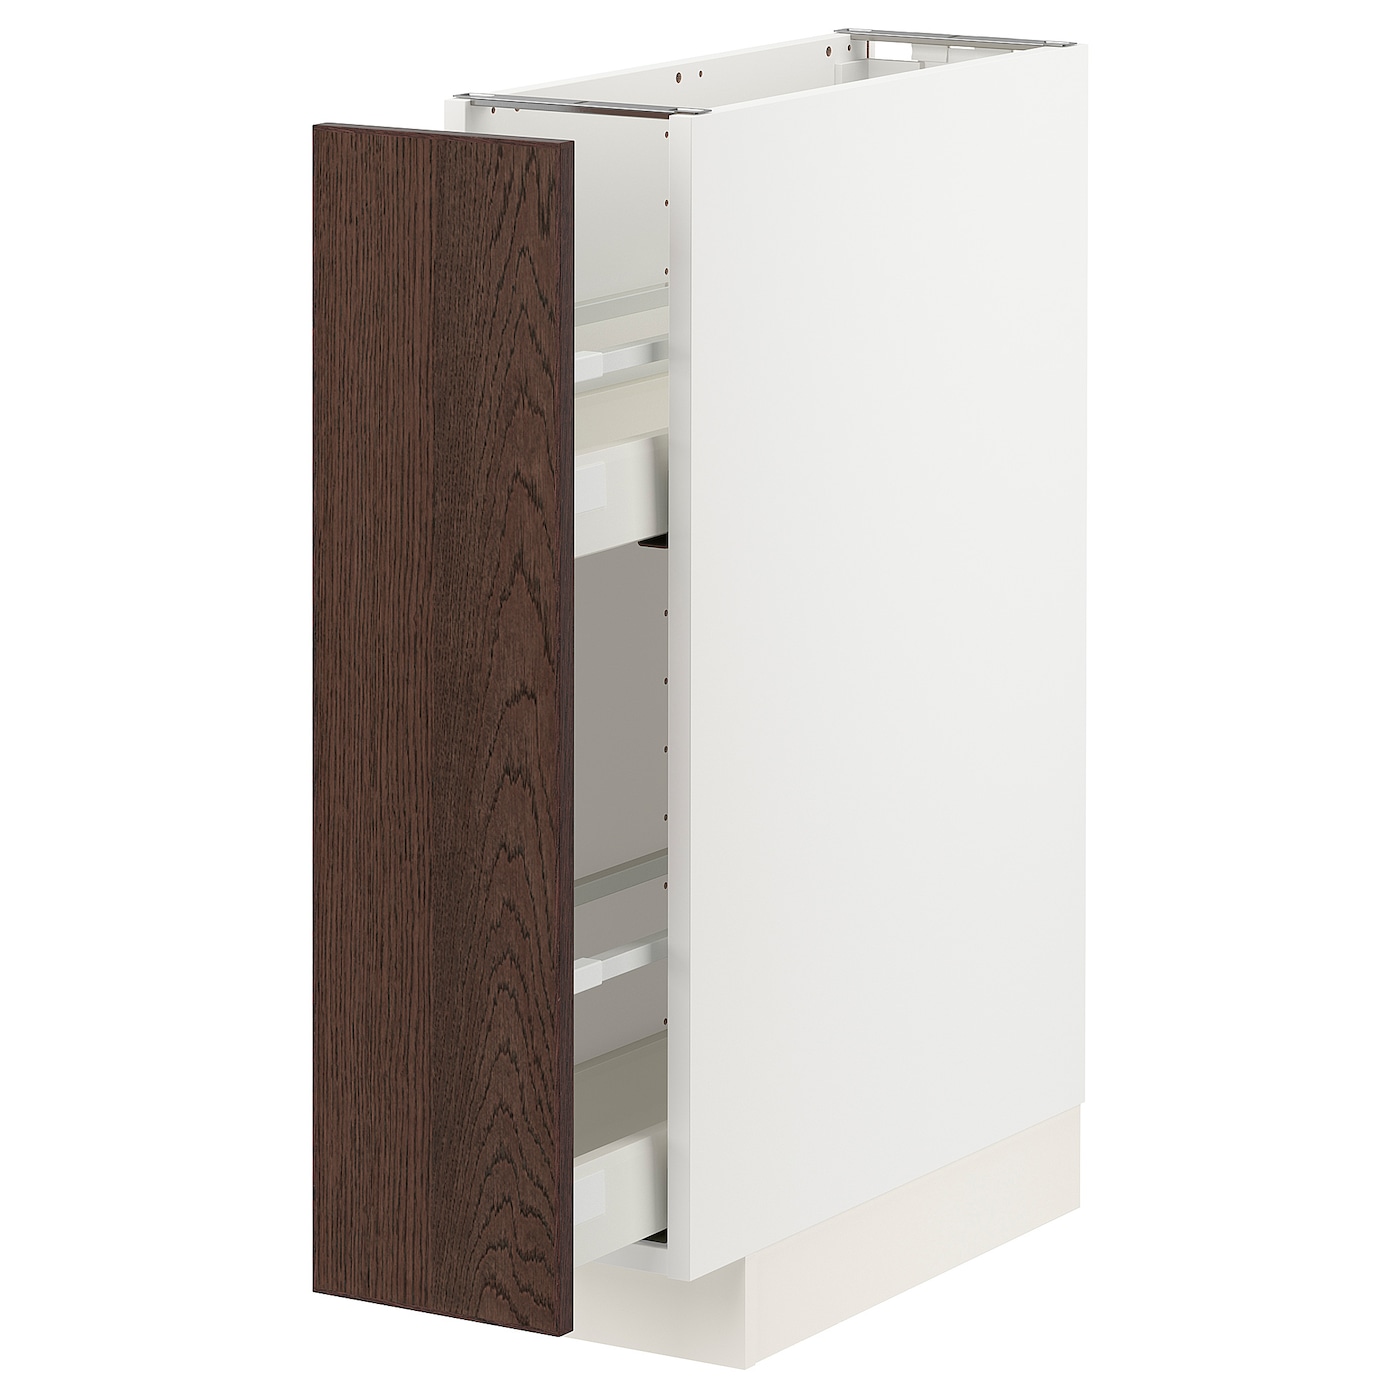 Напольный кухонный шкаф  - IKEA METOD MAXIMERA, 88x62x20см, белый/темно-коричневый, МЕТОД МАКСИМЕРА ИКЕА